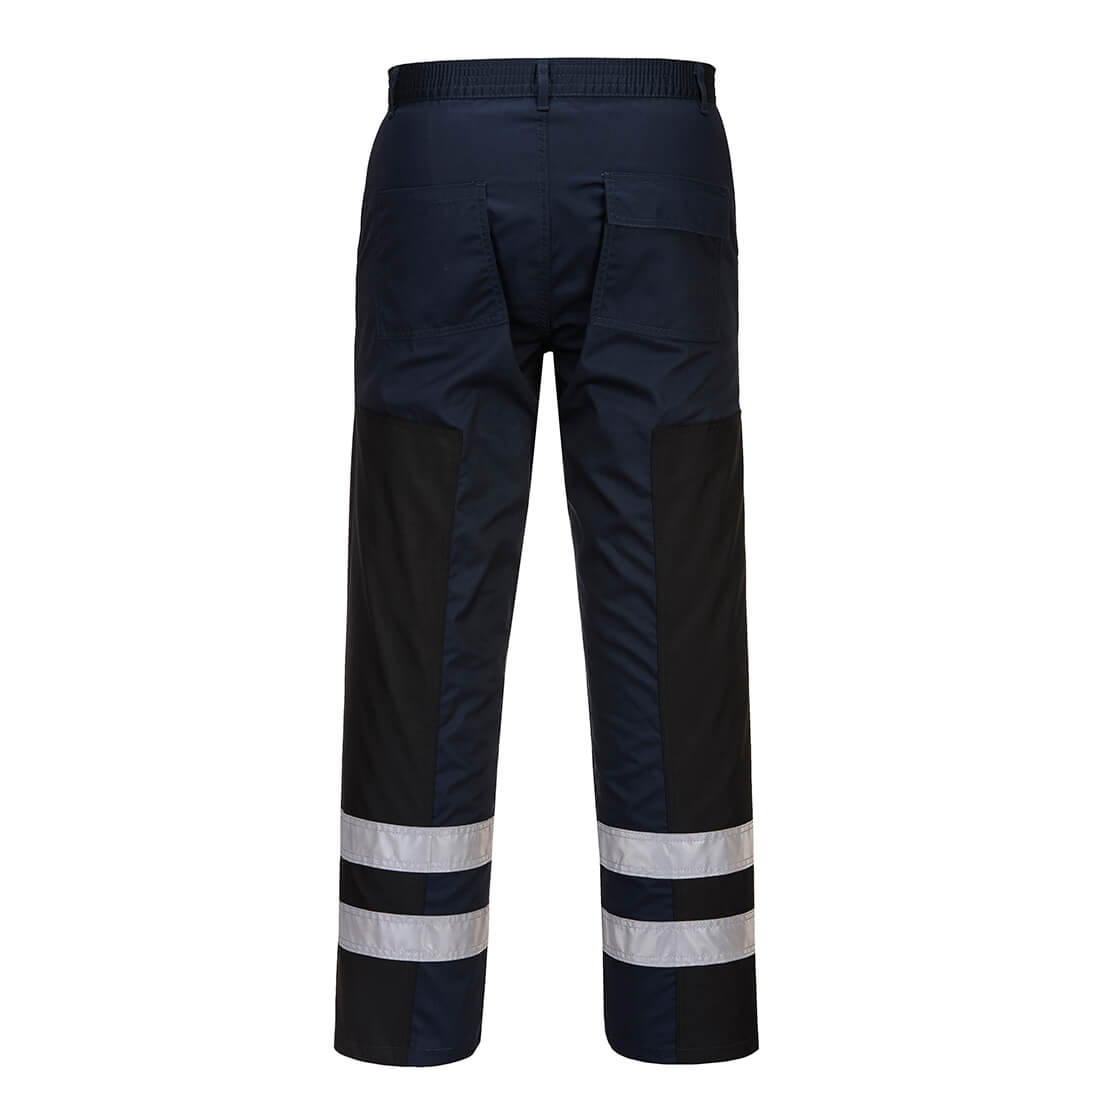 Pantalon Ballistic - Les vêtements de protection